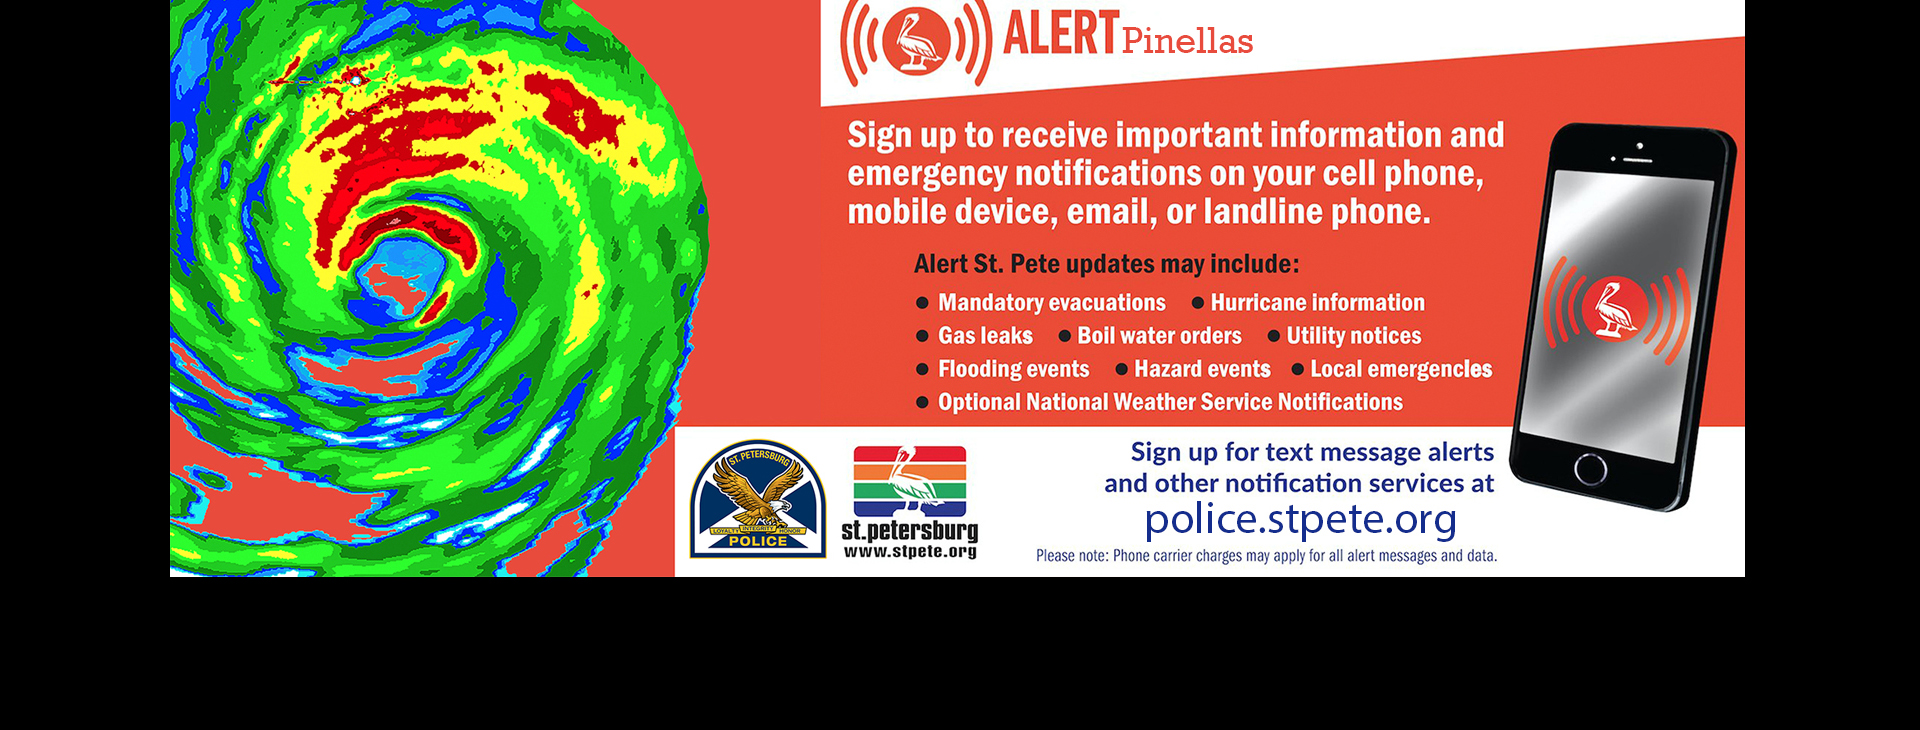 Sign up for emergency alert mesages